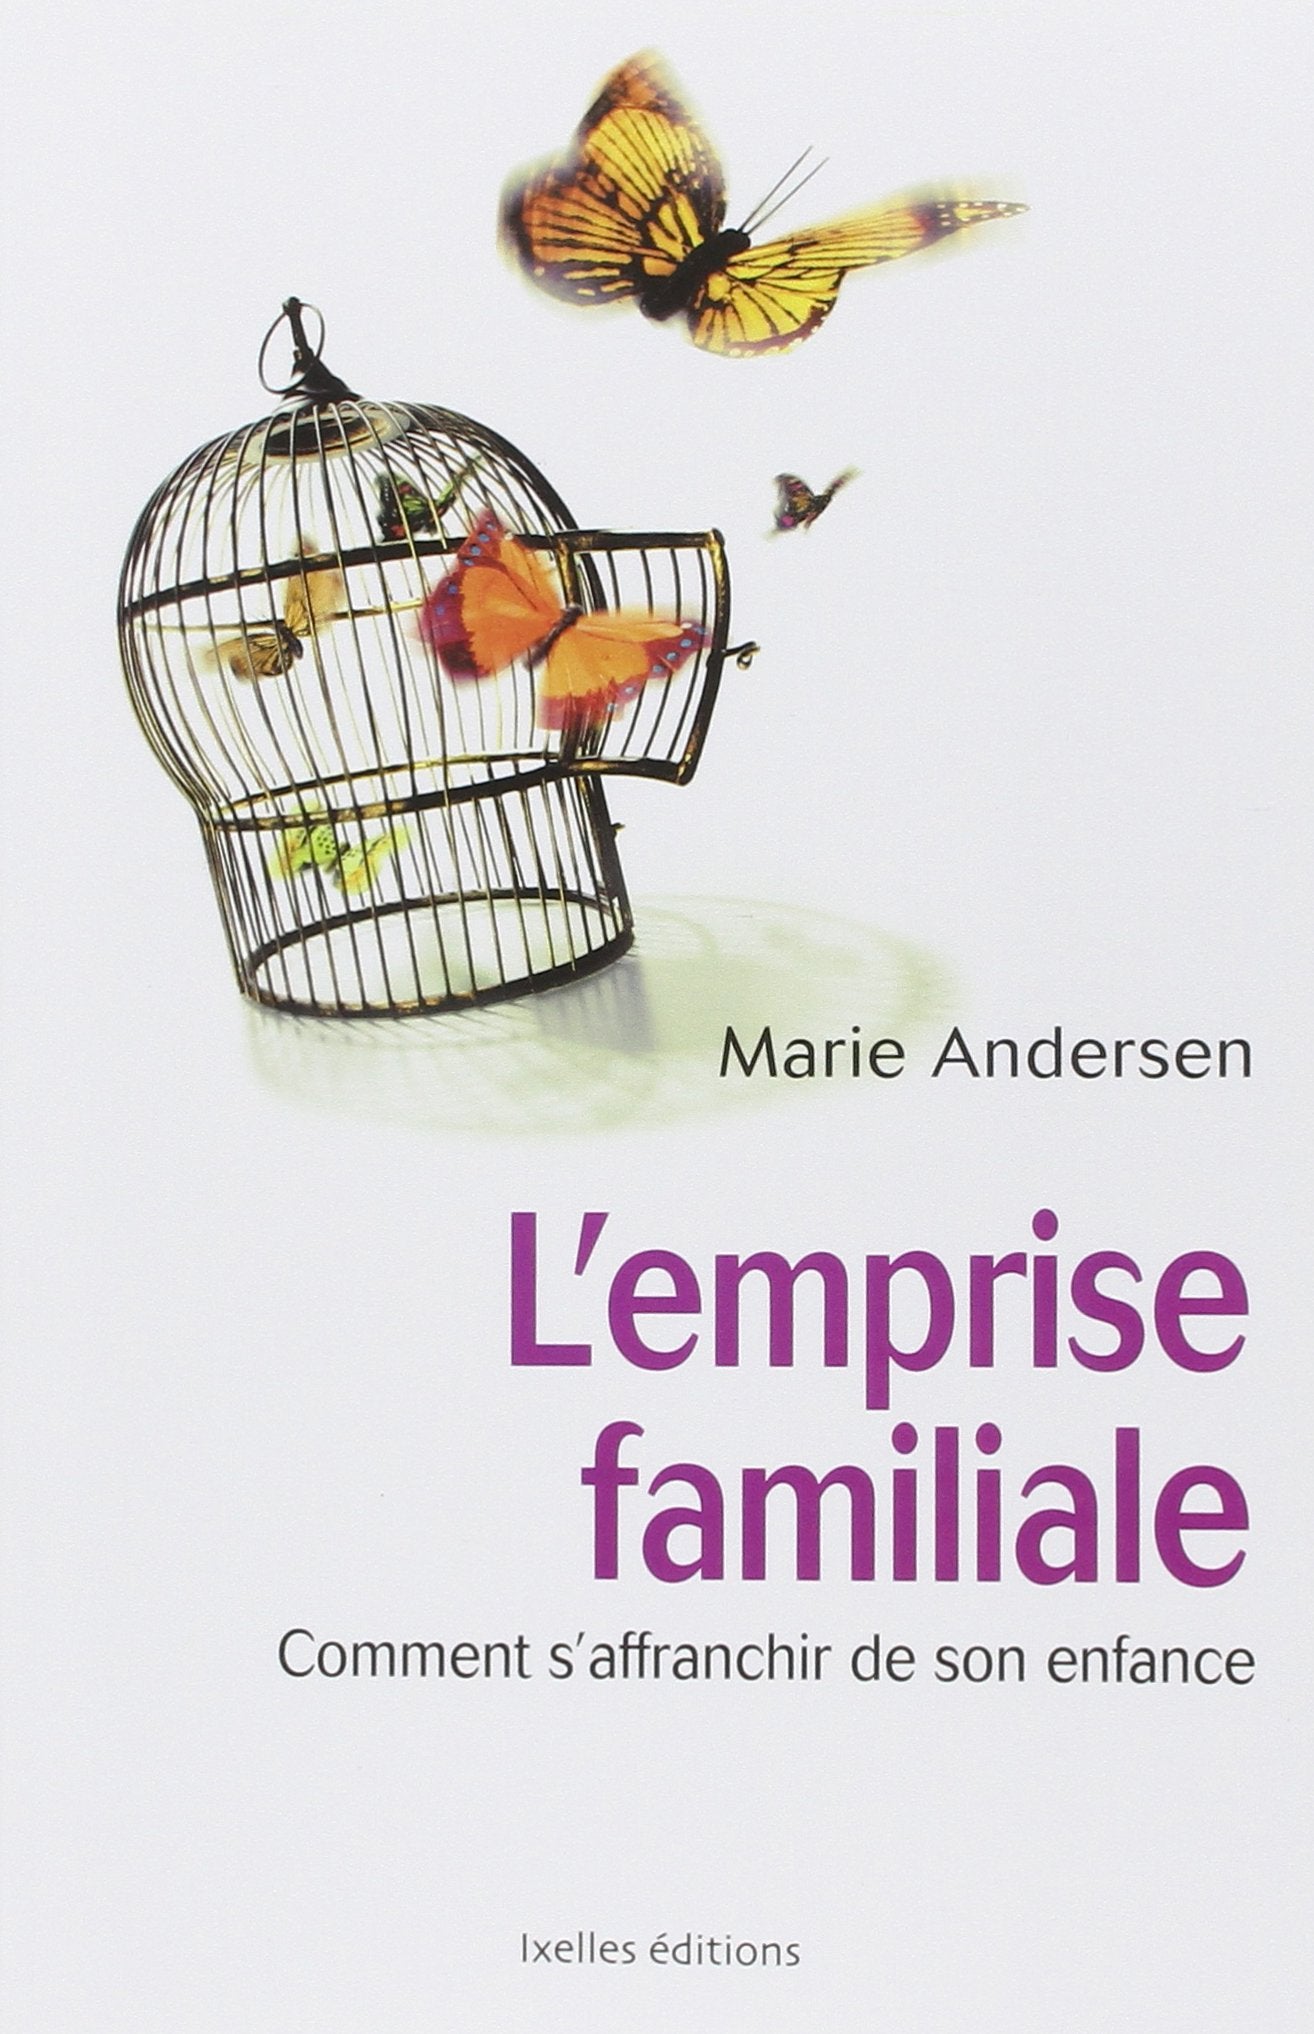 Livre ISBN 2875151266 L'emprise familiale : Comment s'affranchir de son enfance (Marie Andersen)